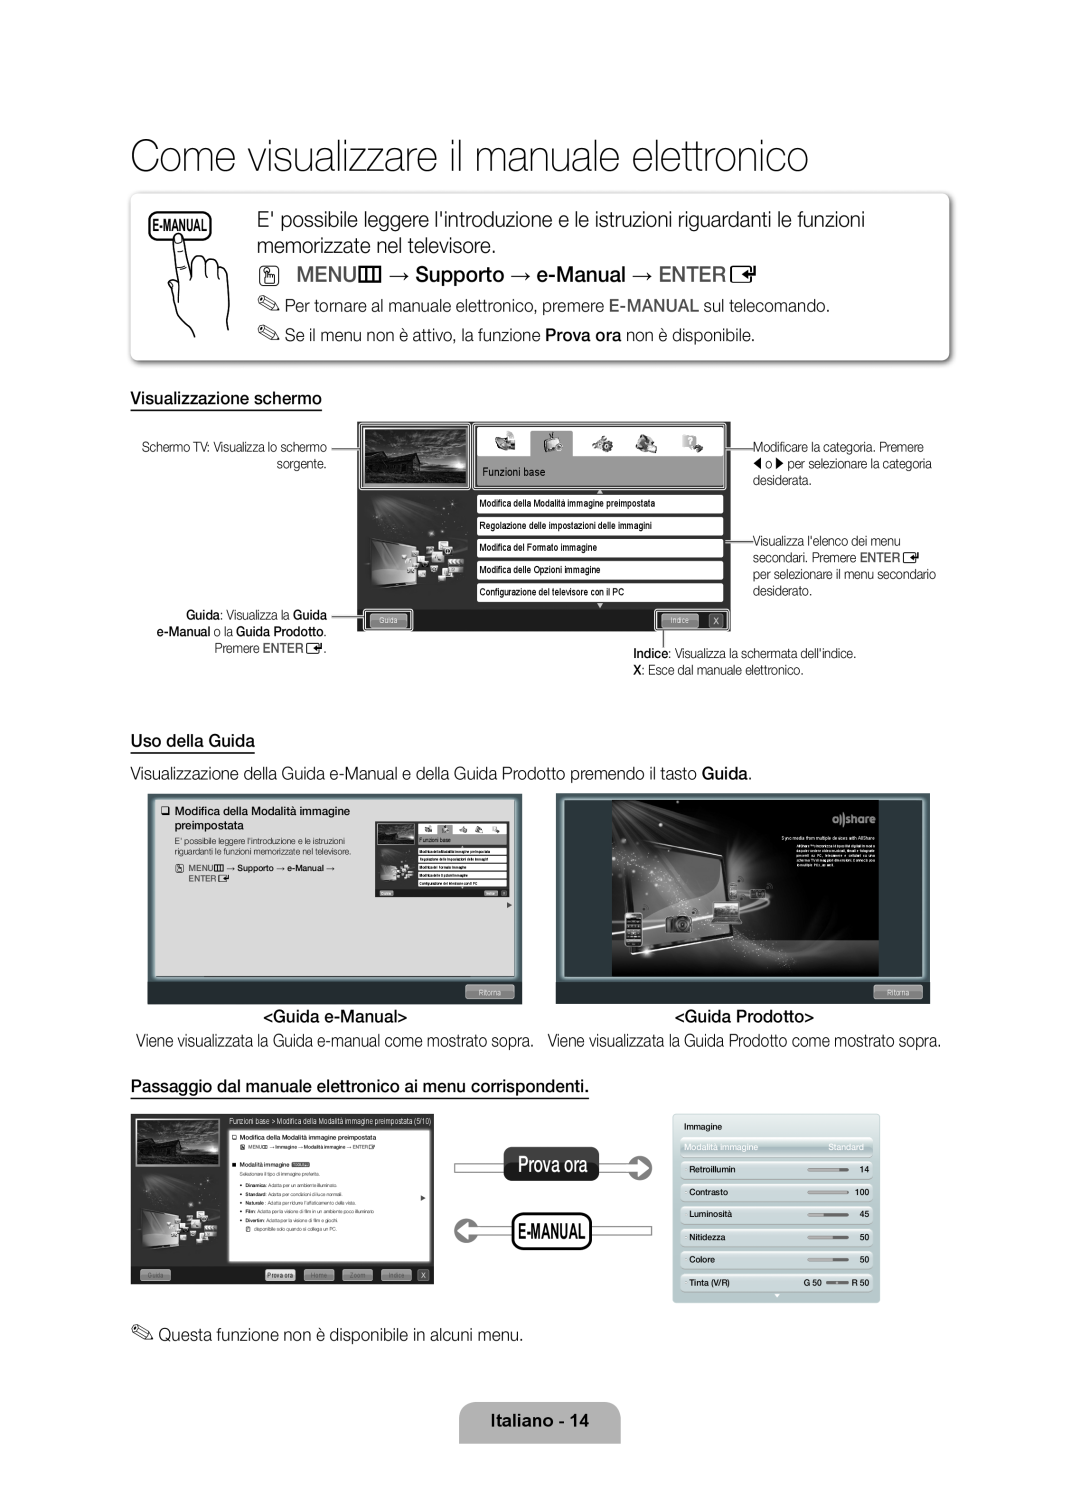 Samsung UE46D6510WSXXH Come visualizzare il manuale elettronico, memorizzate nel televisore, E-Manual, Italiano, Prova ora 